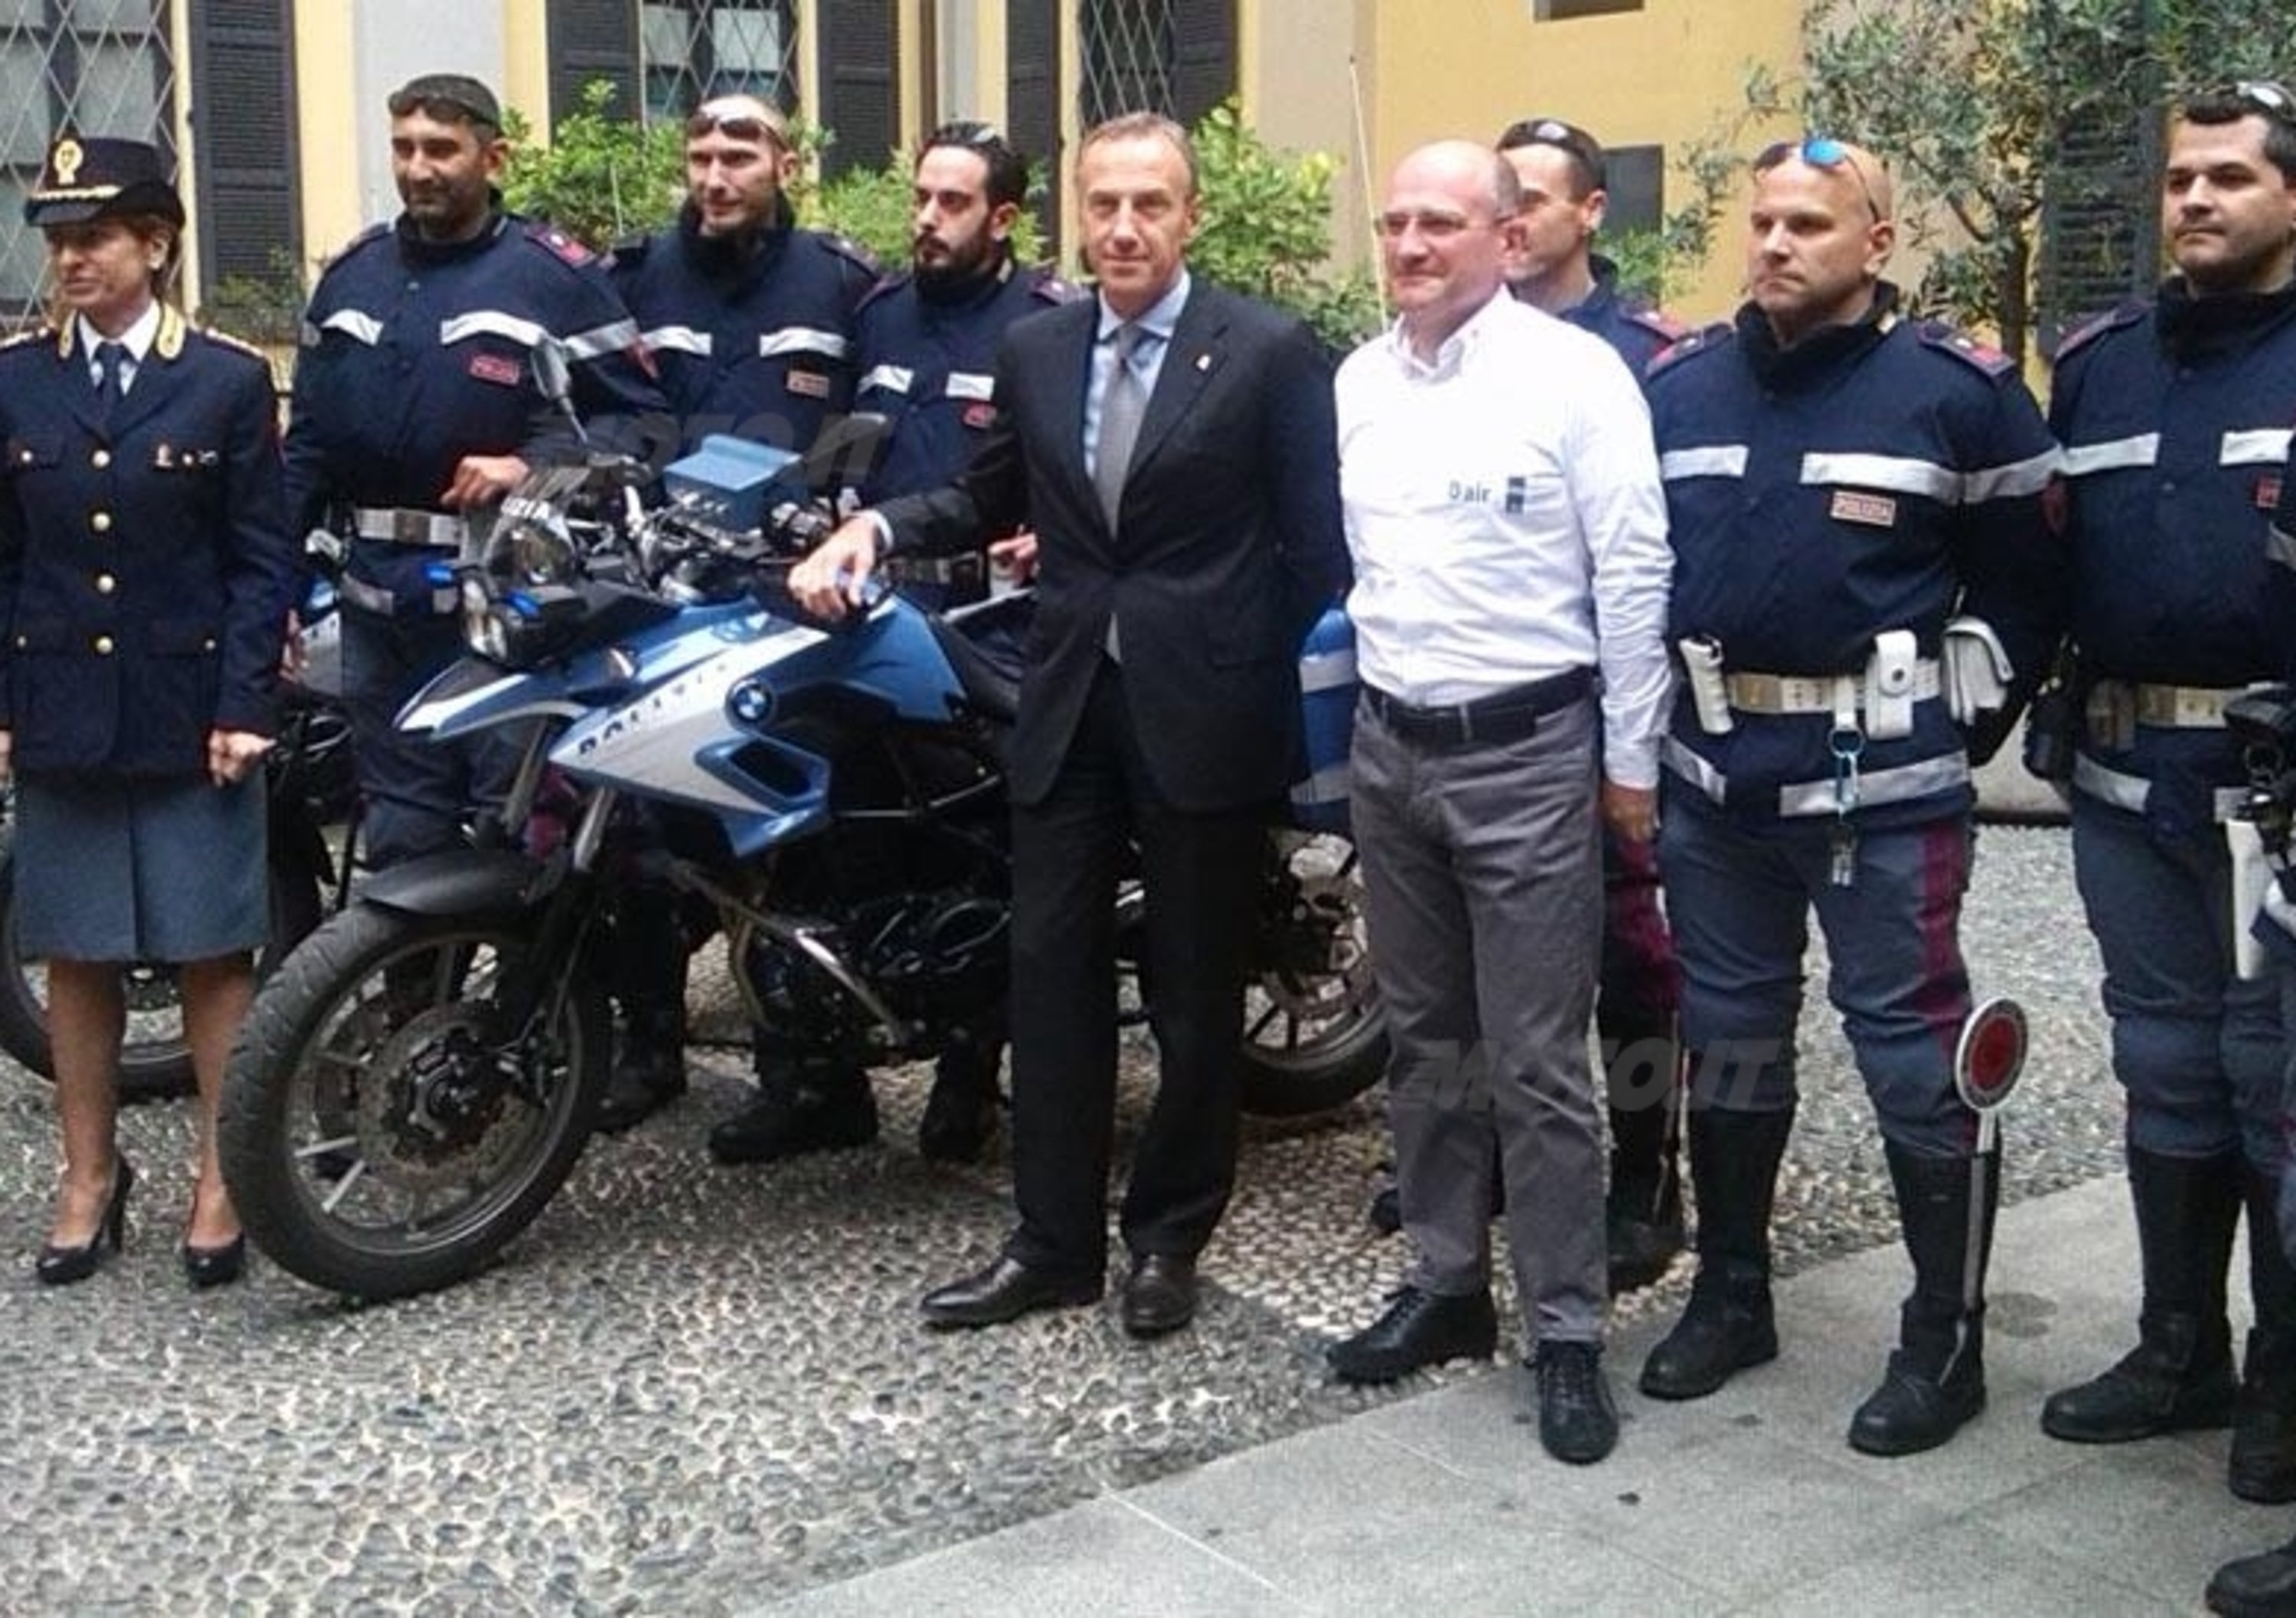 Dainese e BMW rimettono in moto i poliziotti della Questura di Milano